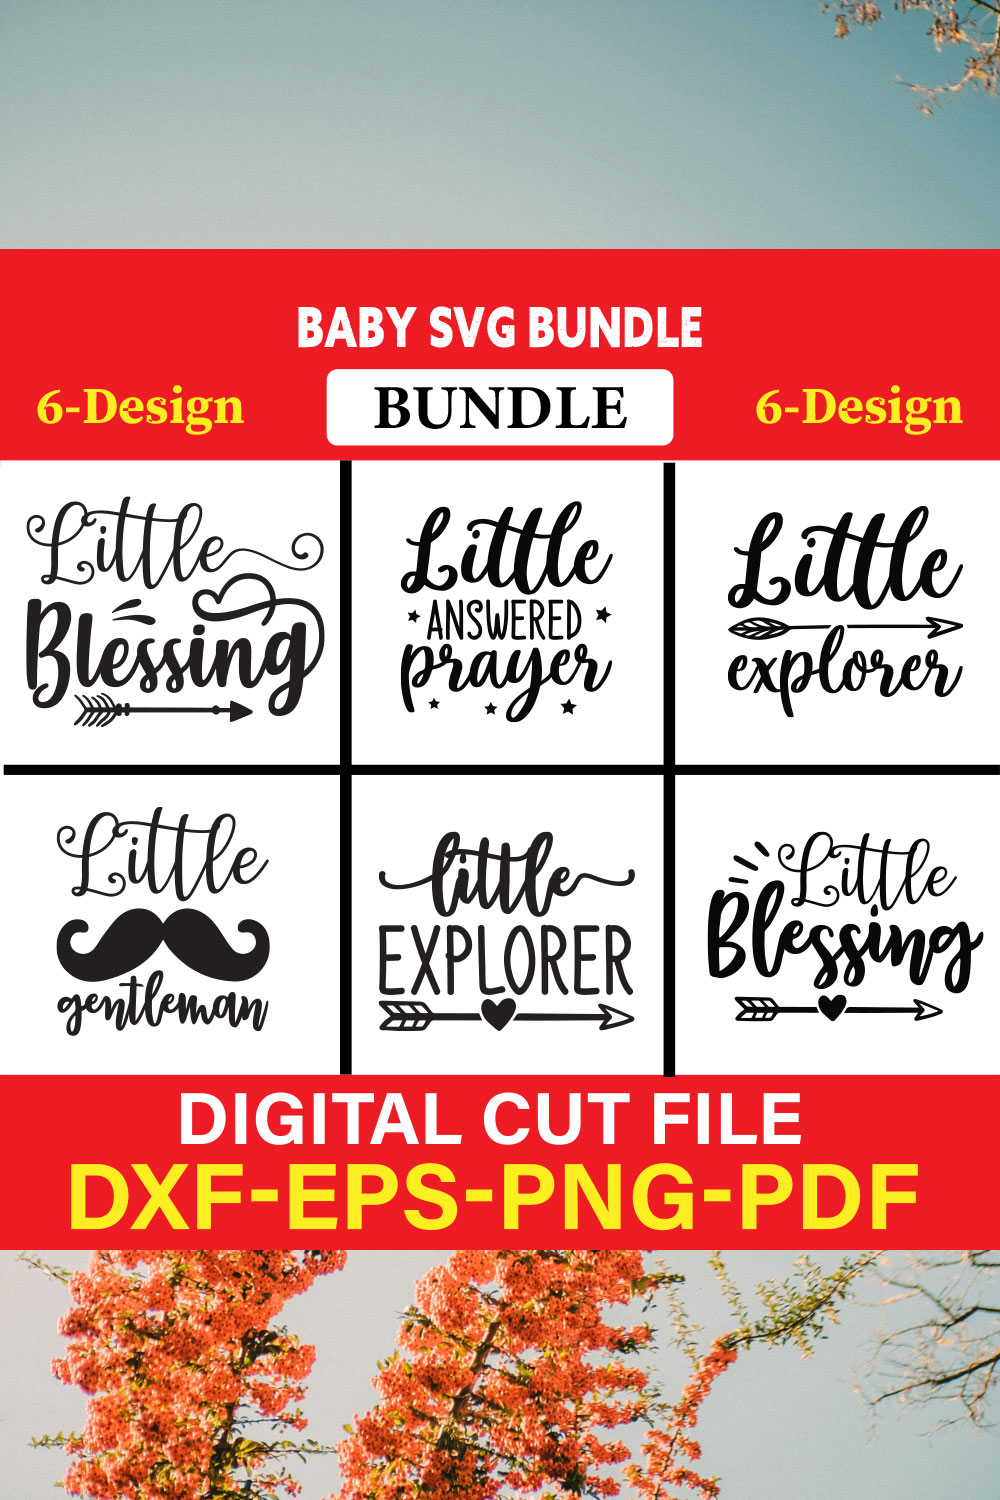 Baby T-shirt Design Bundle Vol-7 pinterest preview image.